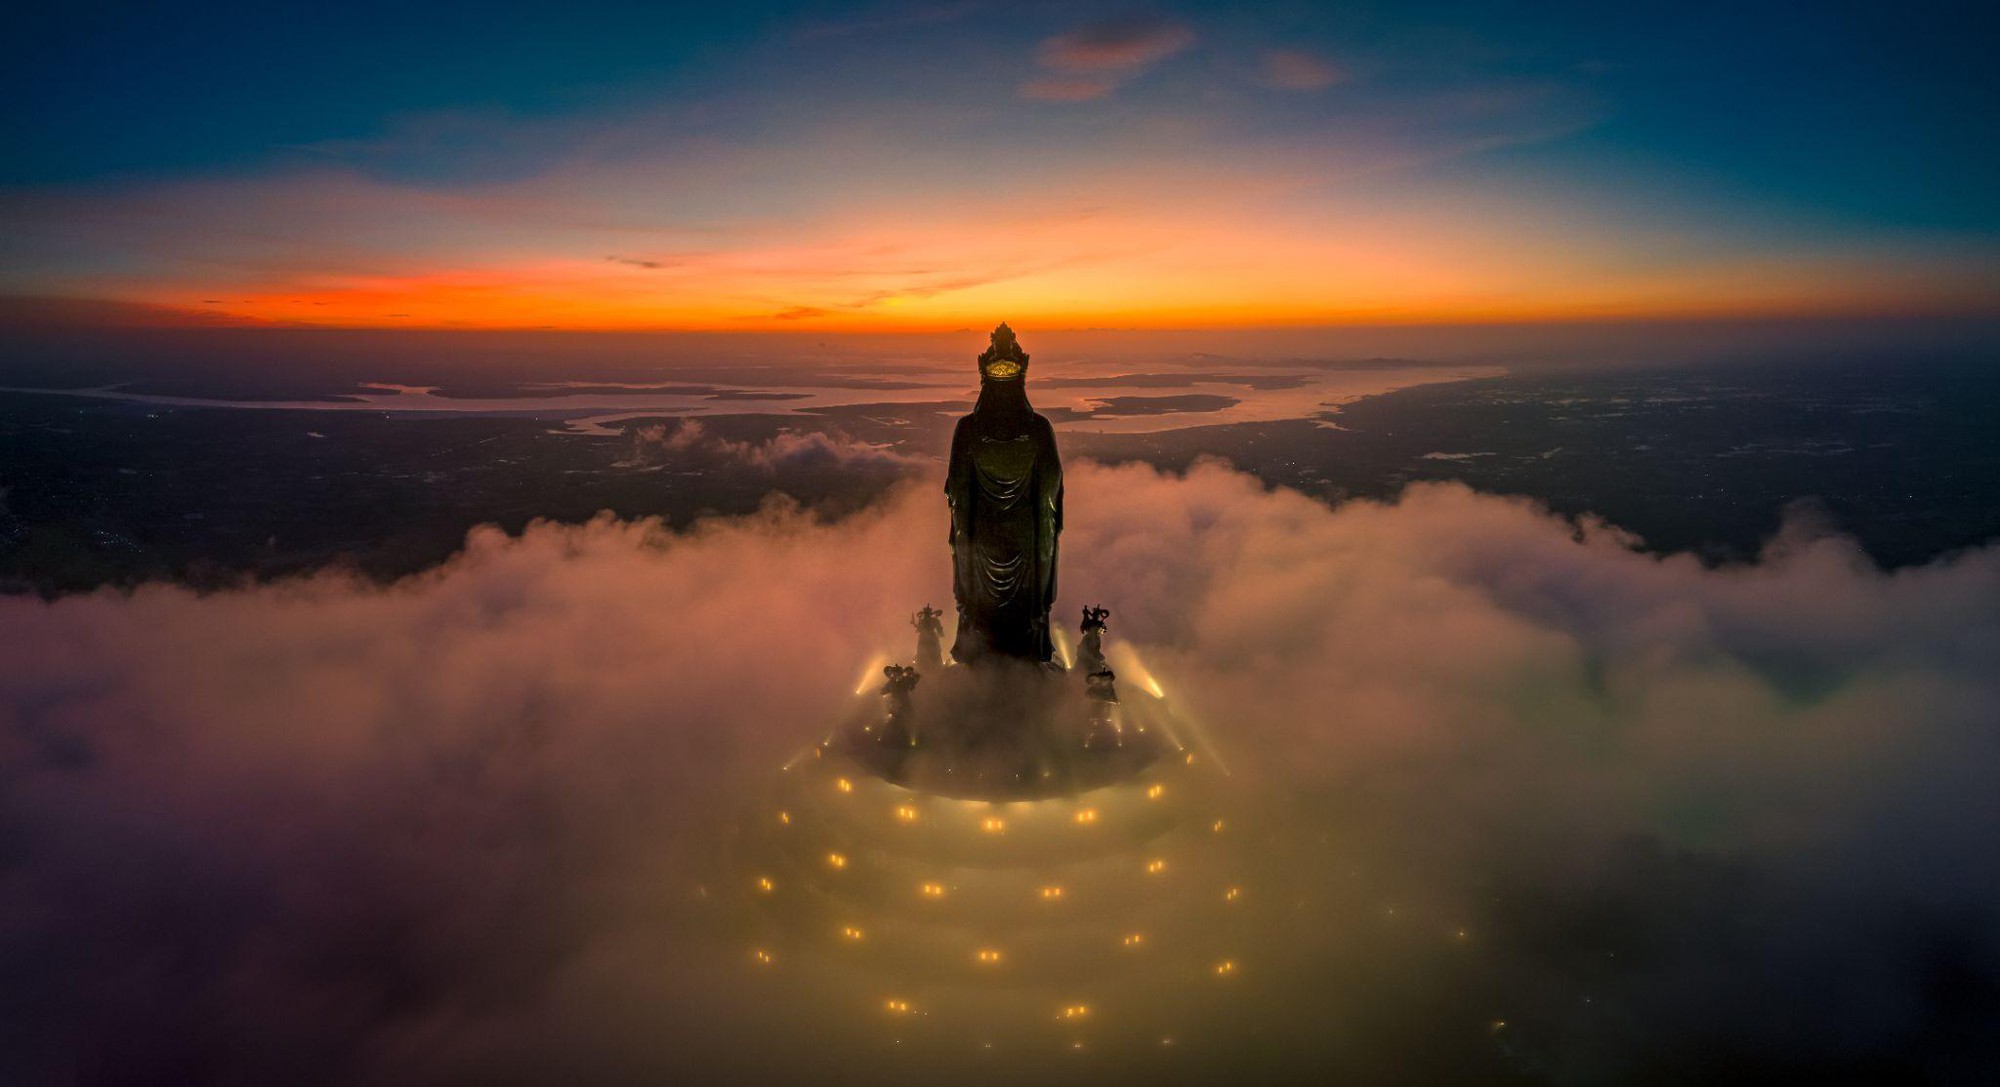 Chương trình văn hóa nghệ thuật Phật giáo mừng Lễ Vu Lan sẽ được tổ chức trang trọng tại Núi Bà Đen, Tây Ninh - Ảnh 1.